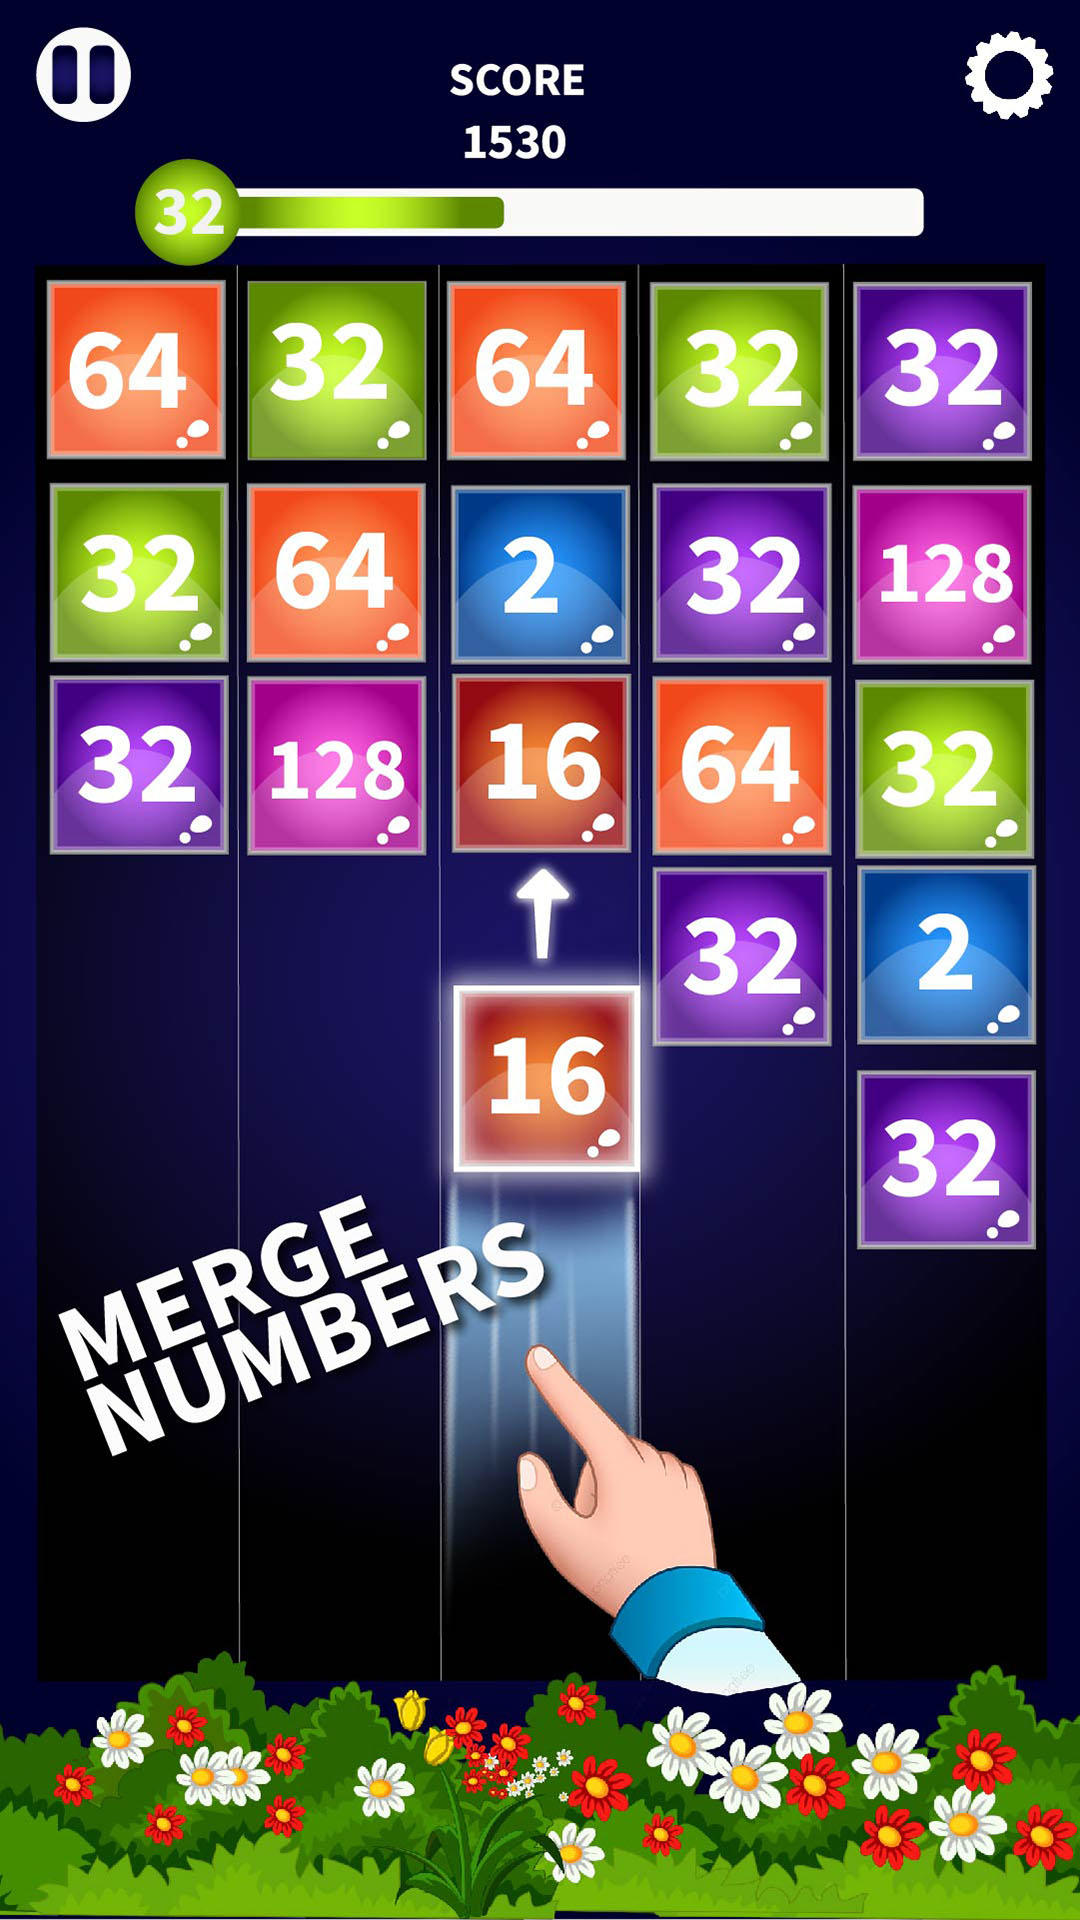 2048: X2 MERGE BLOCKS jogo online gratuito em